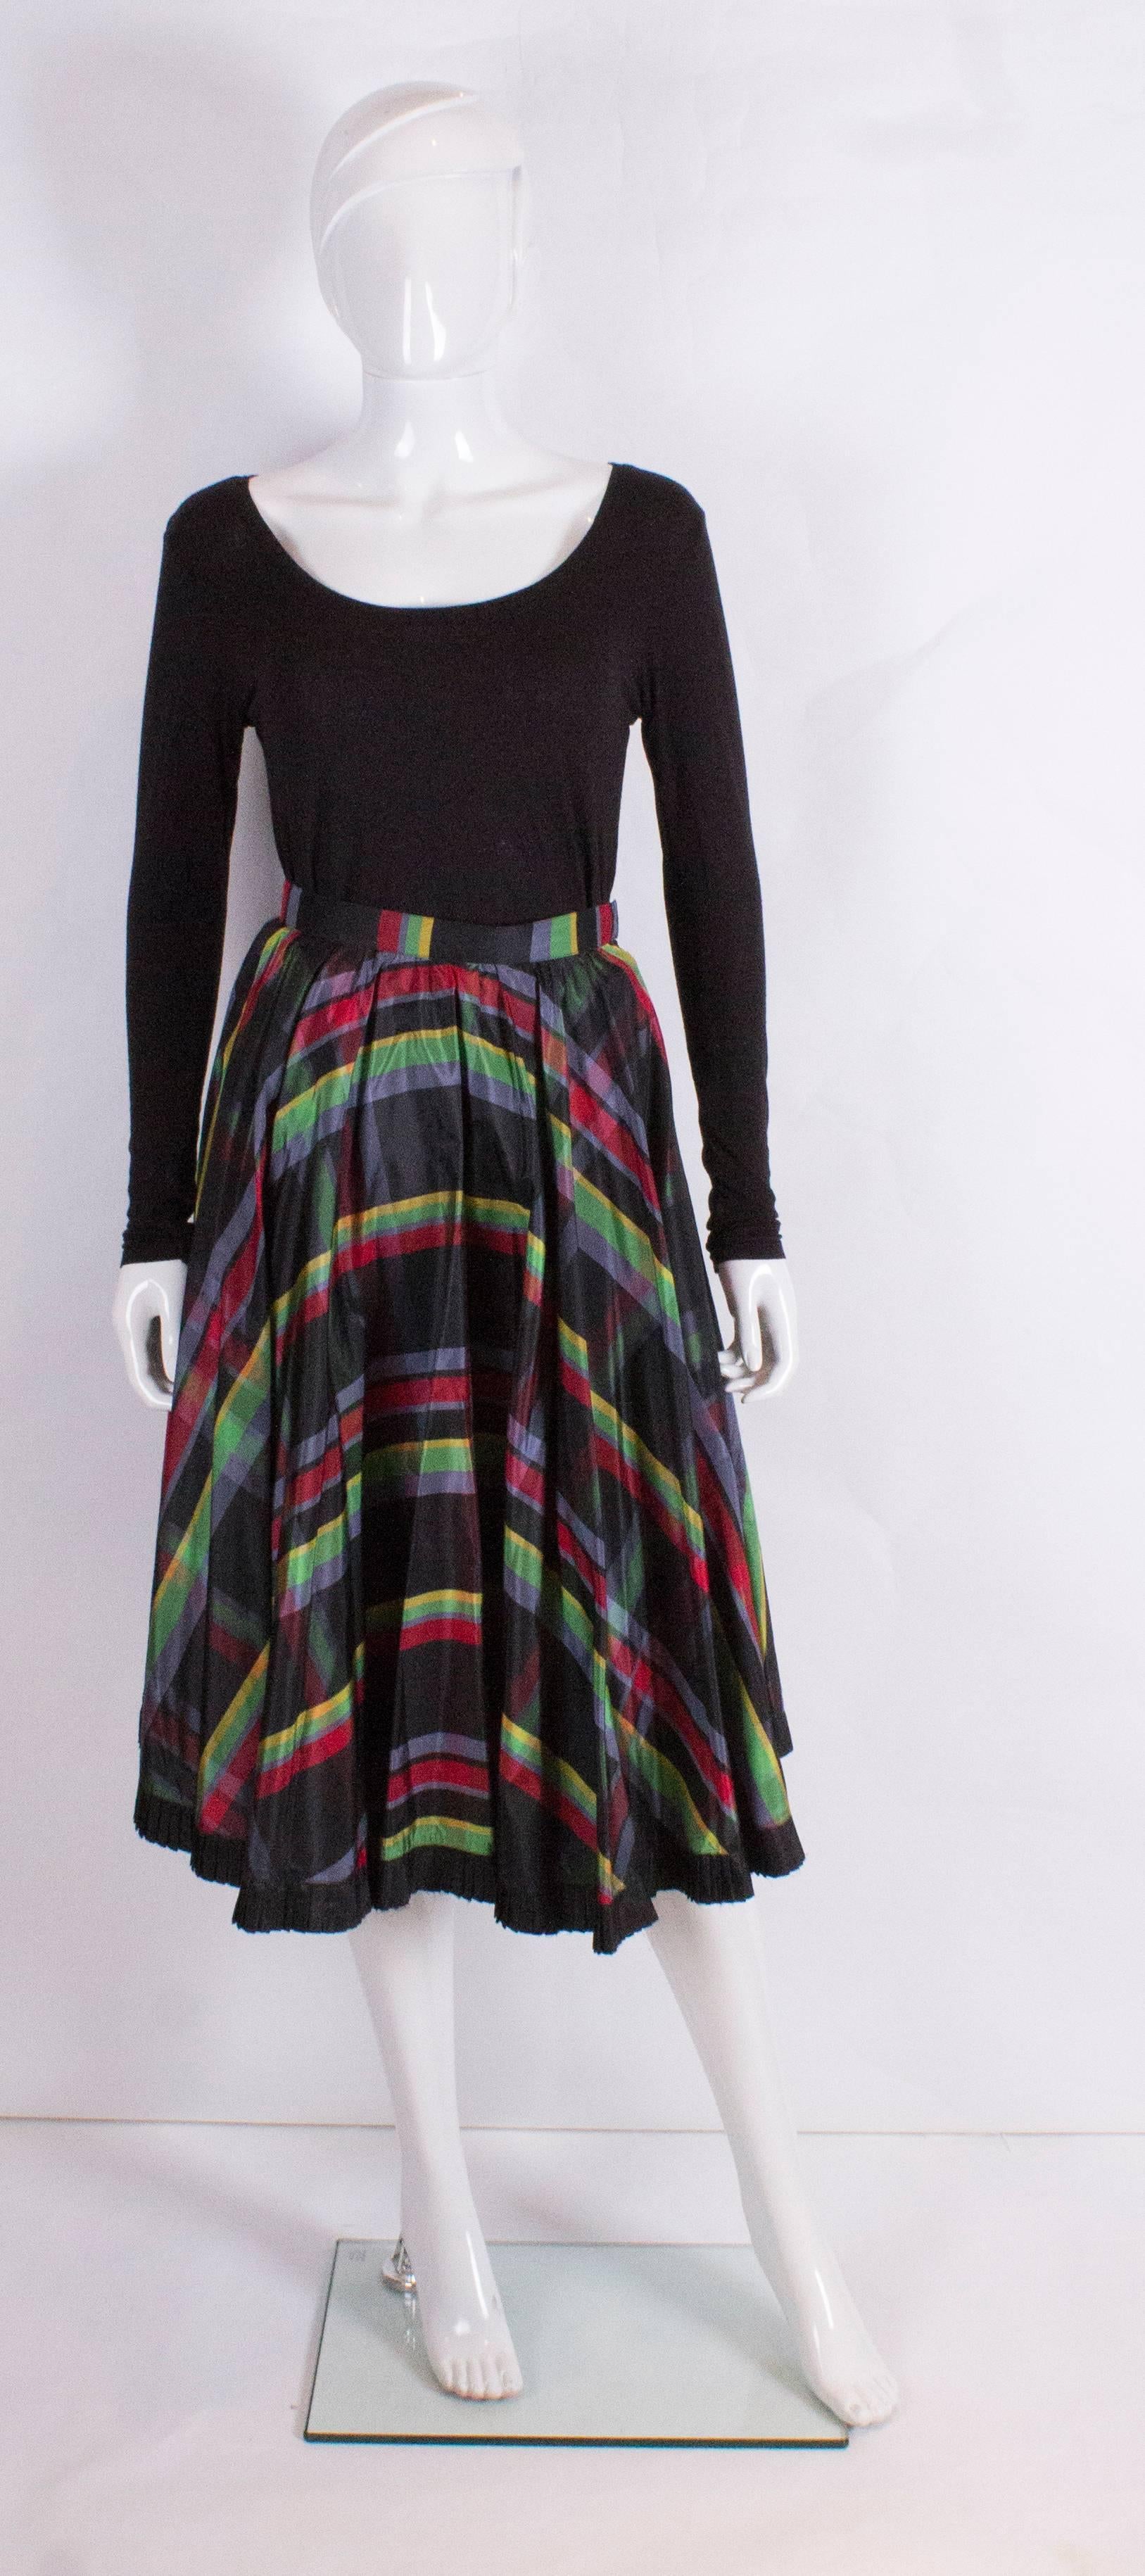 Une jupe amusante pour l'automne. Ce vintage  la jupe en soie a un fond noir avec des rayures colorées. 
Il comporte également un jupon en soie noire séparé avec un ourlet à volants.